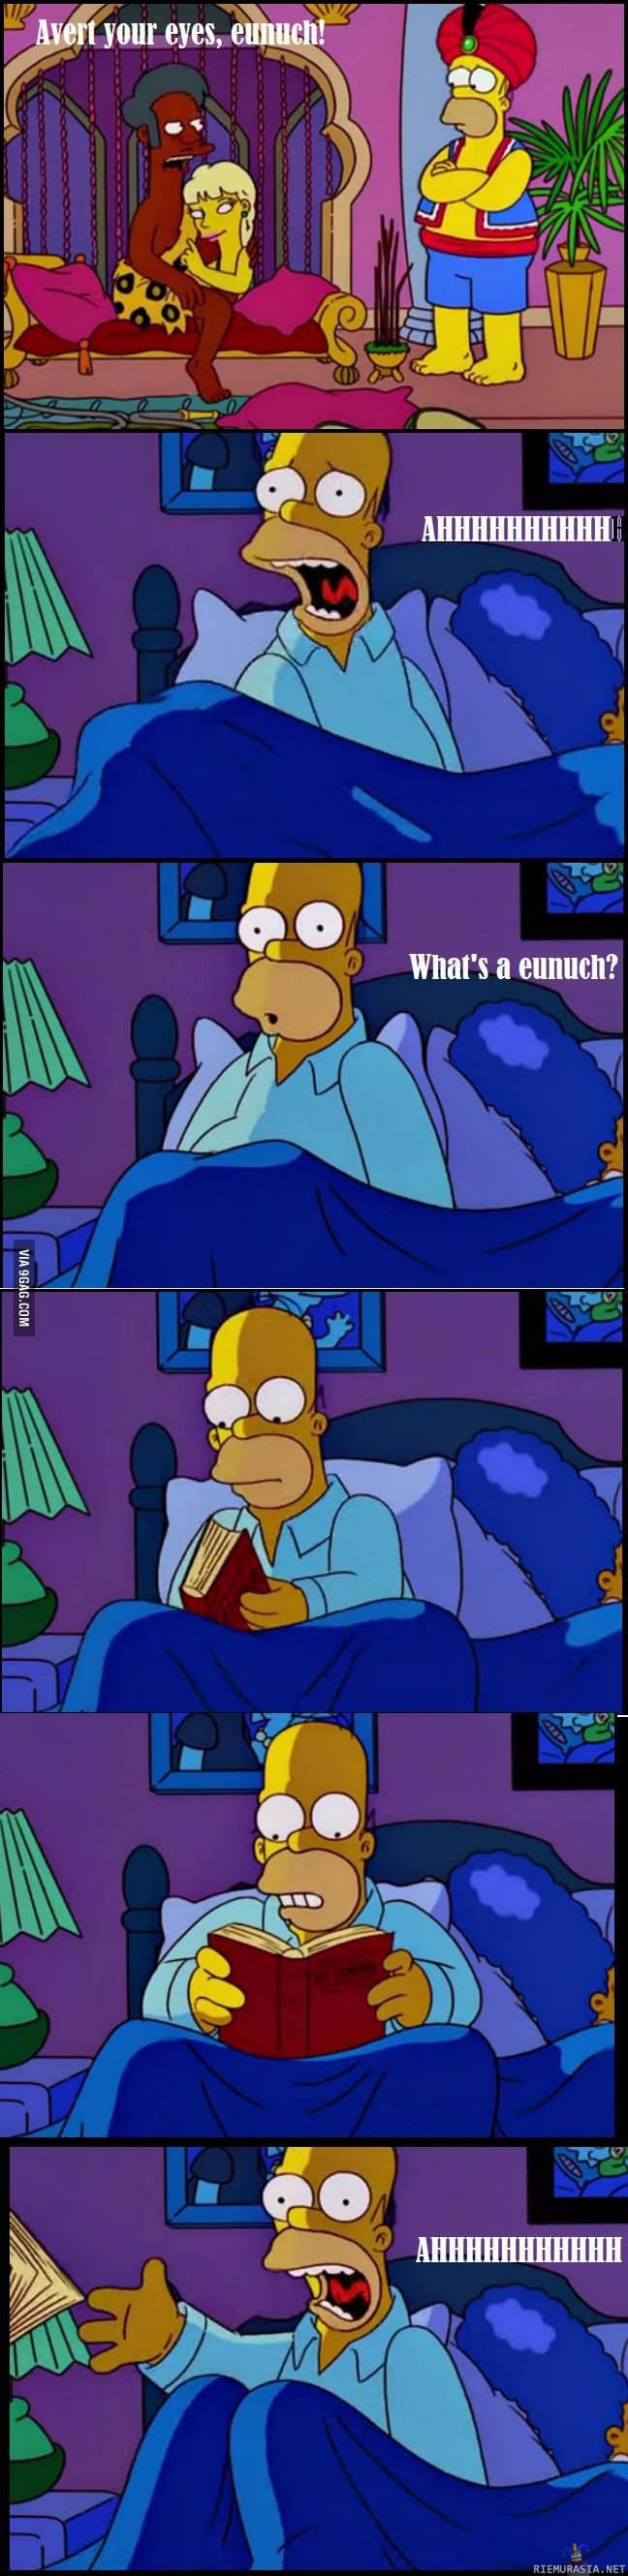 Homerin painajainen